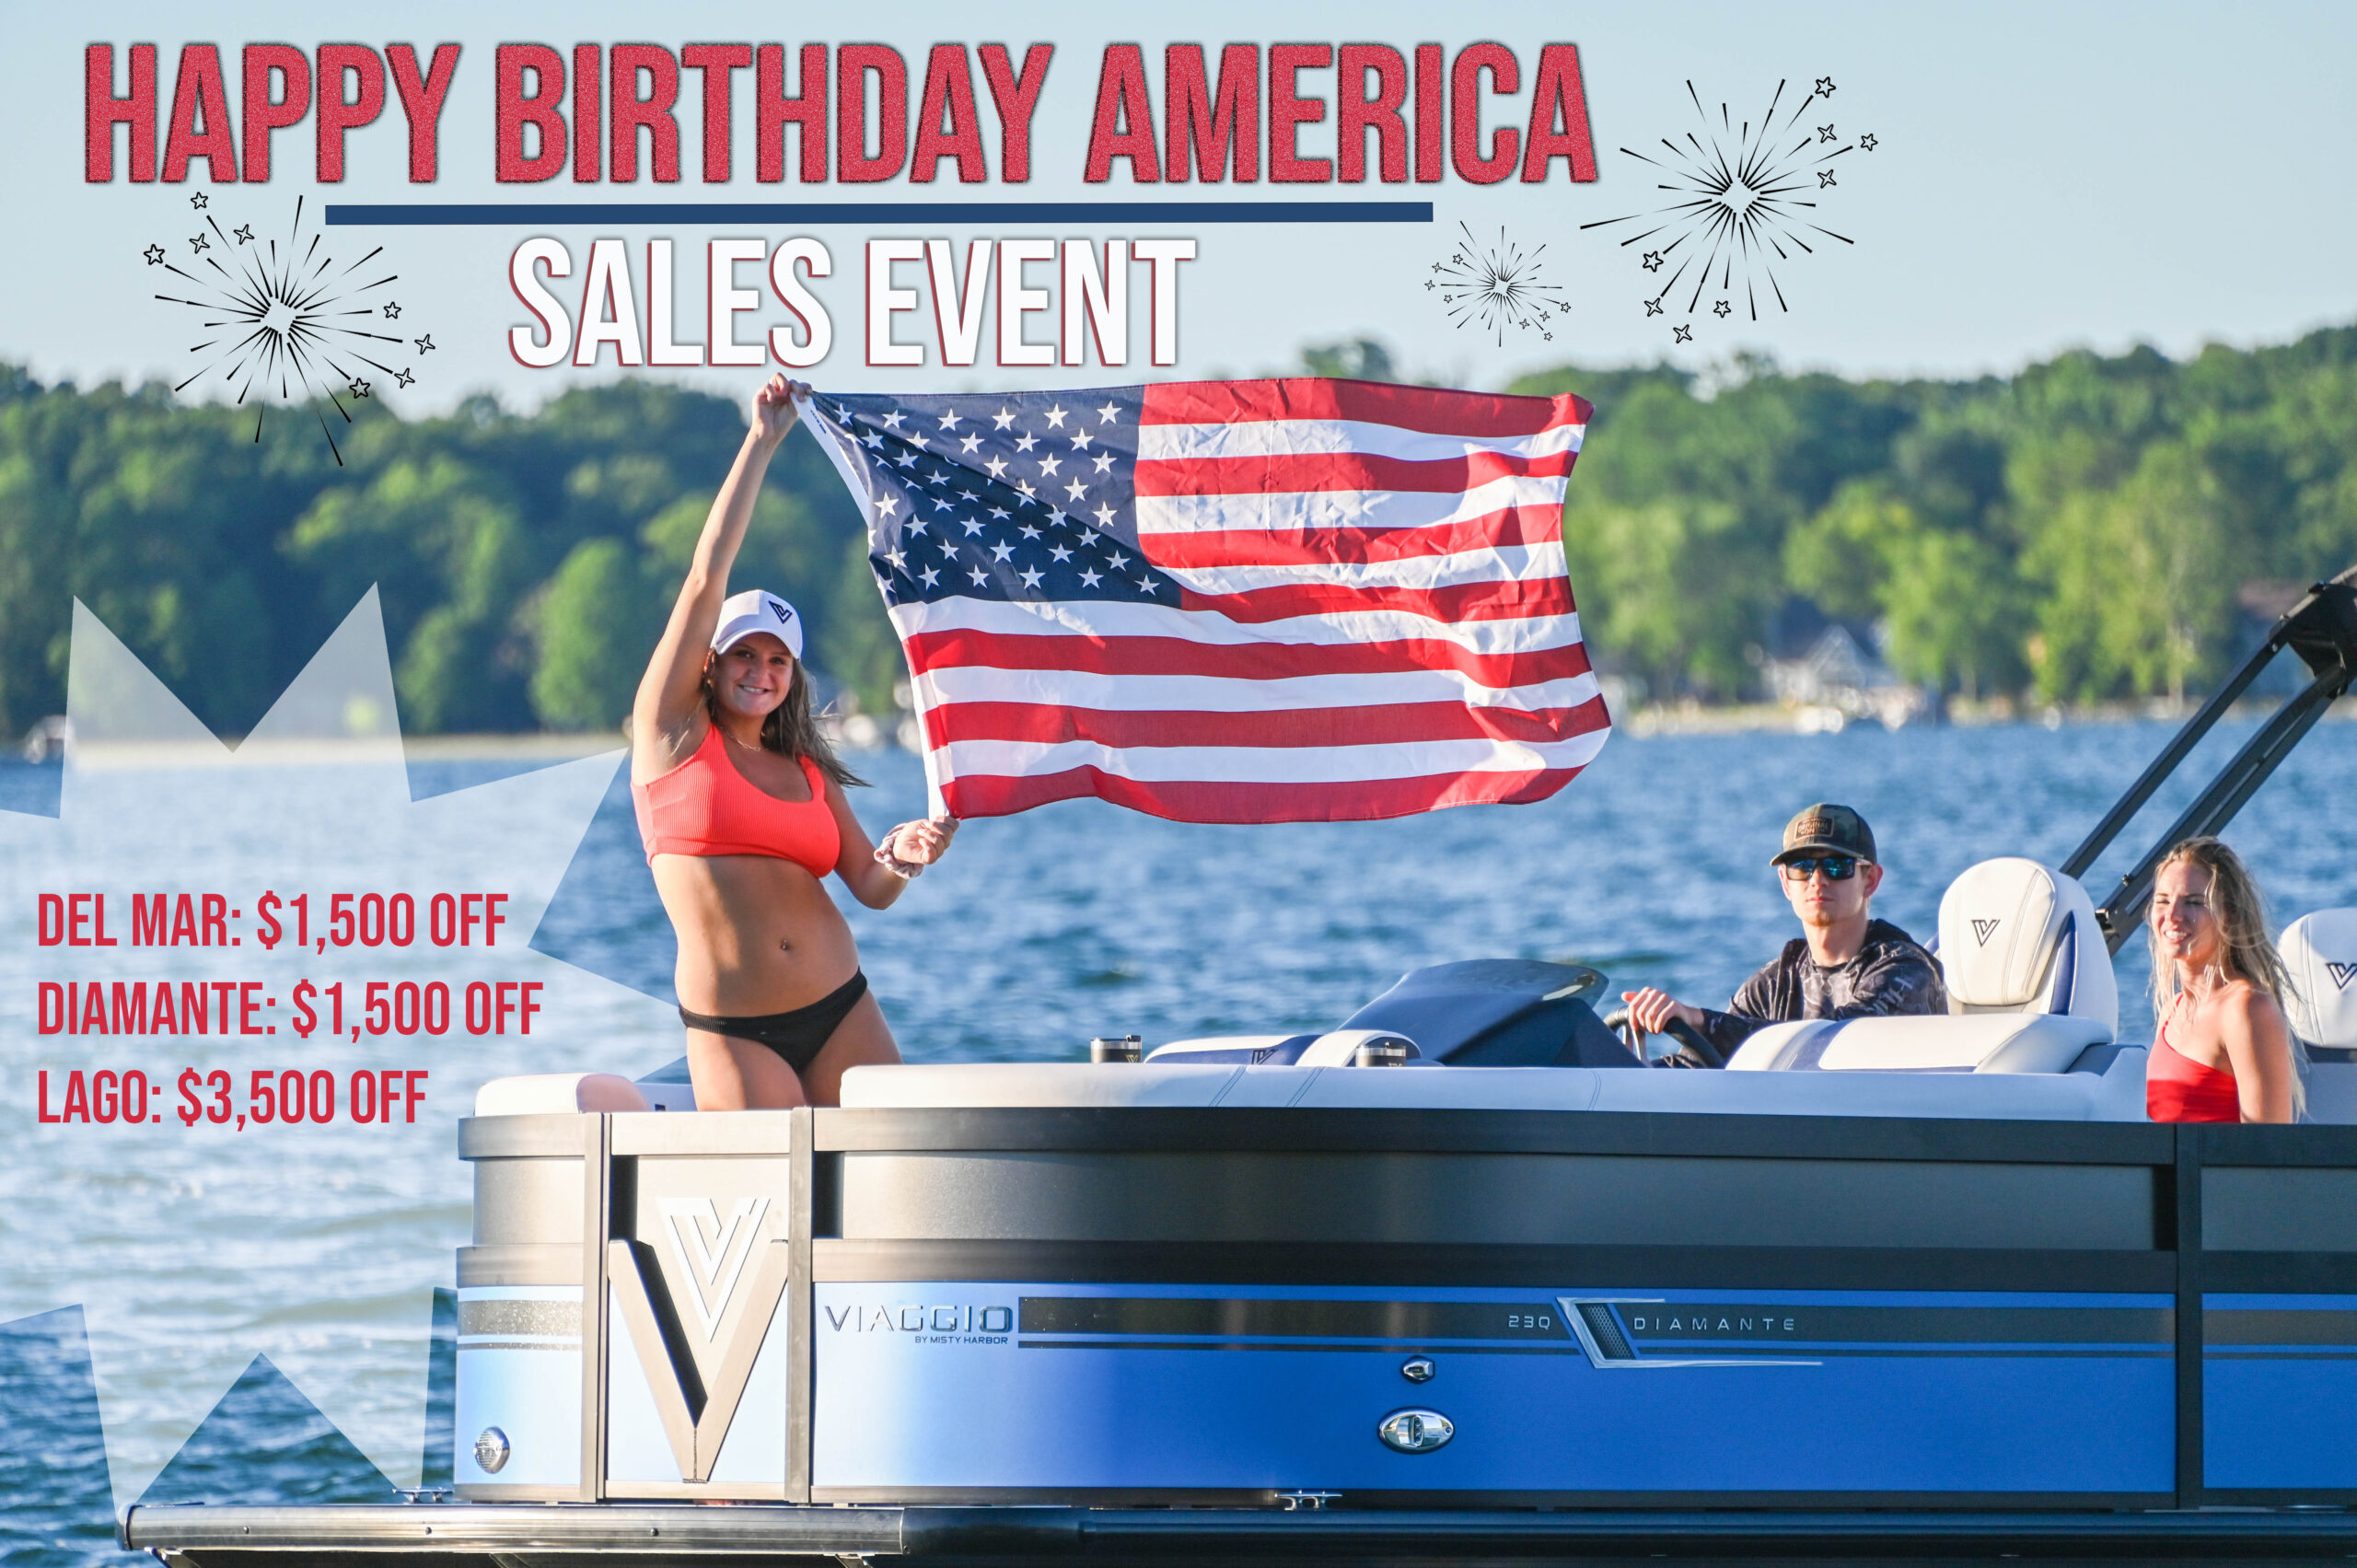 Happy Birthday America Sales Event